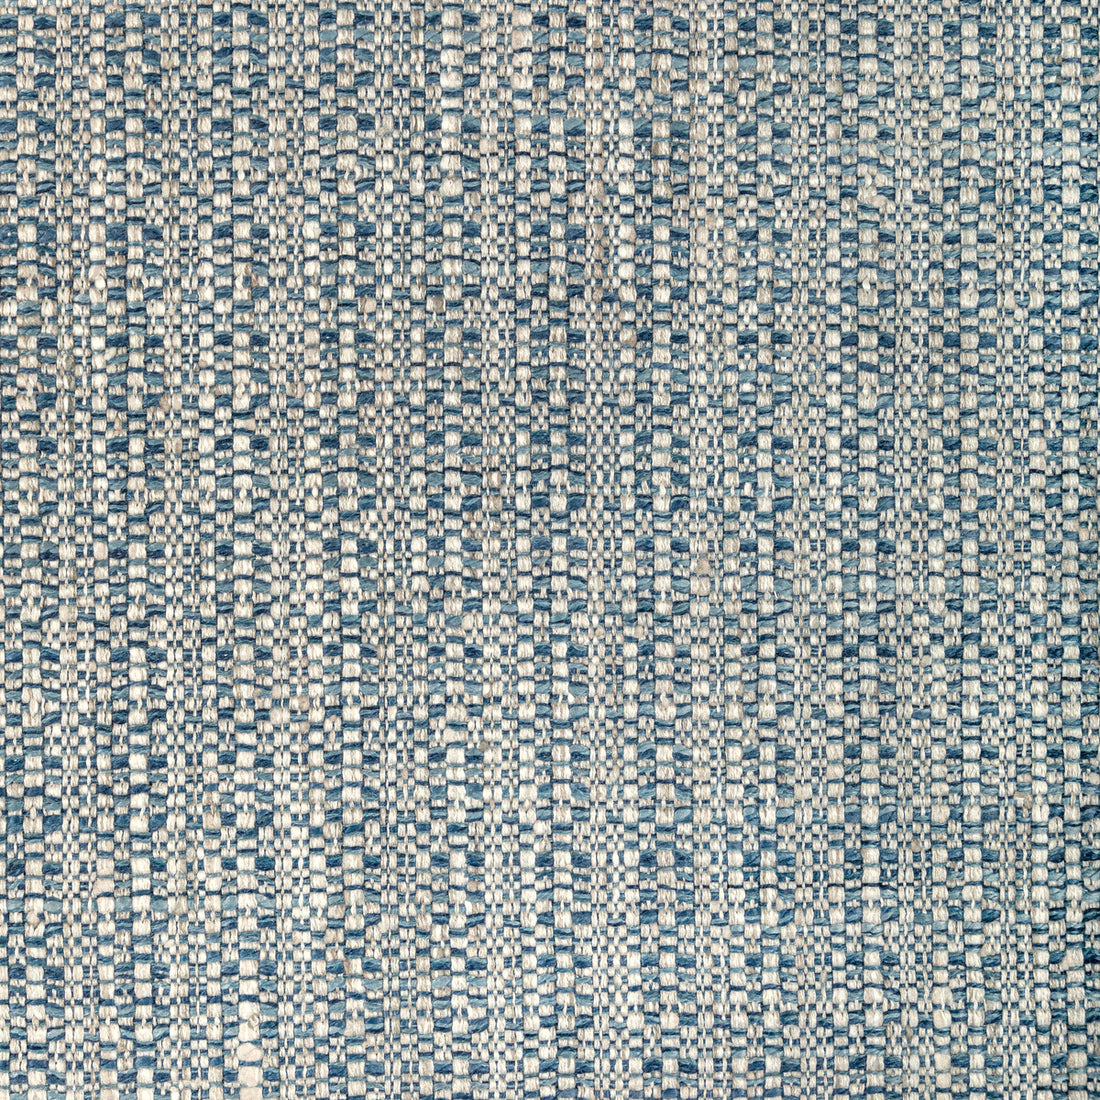 Kravet Basics fabric in 36554-5 color - pattern 36554.5.0 - by Kravet Basics